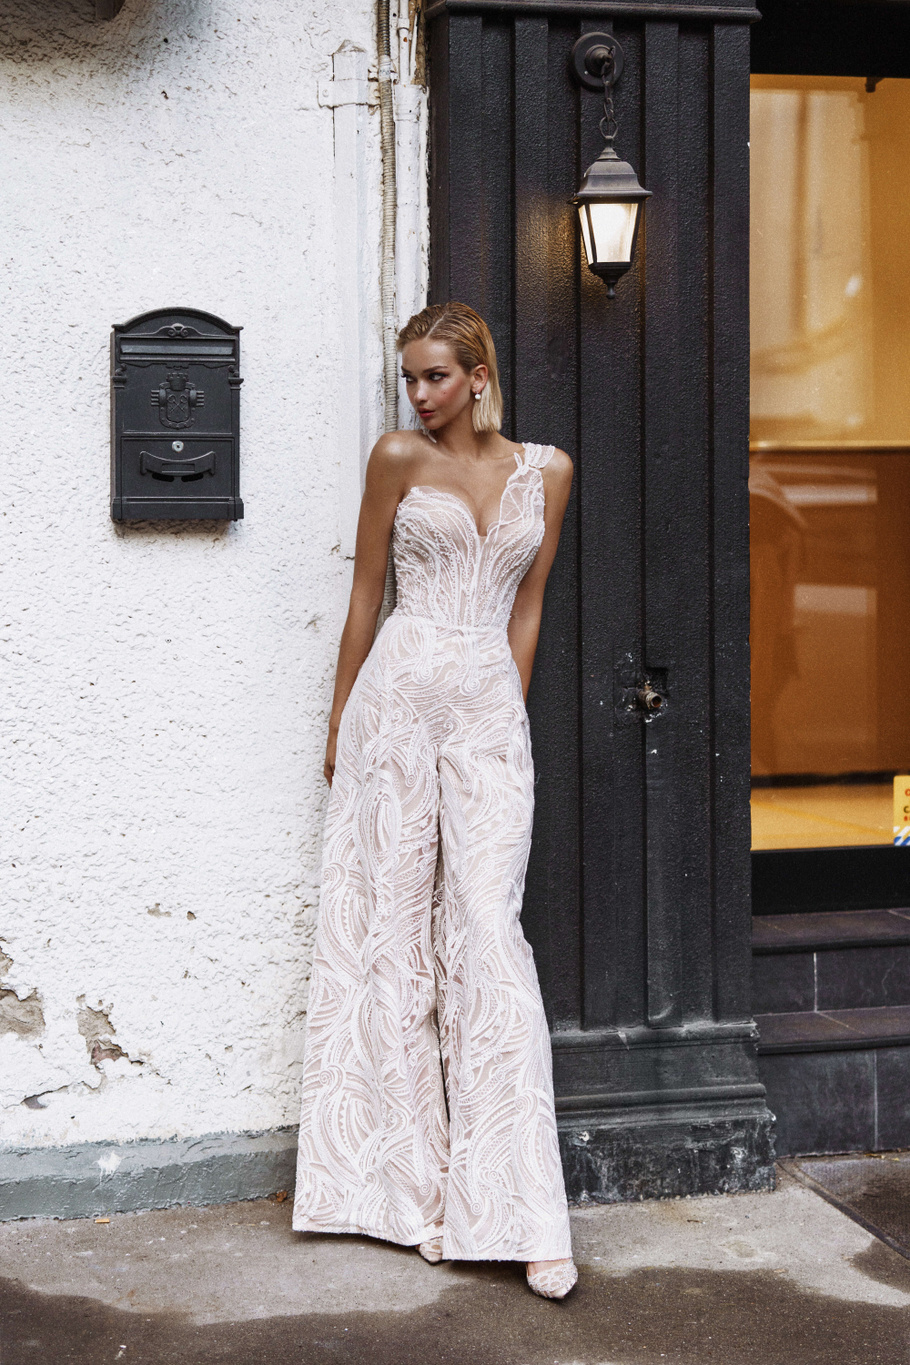 Купить свадебное платье «Марракеш» Рара Авис из коллекции О Май Брайд 2021 года в интернет-магазине